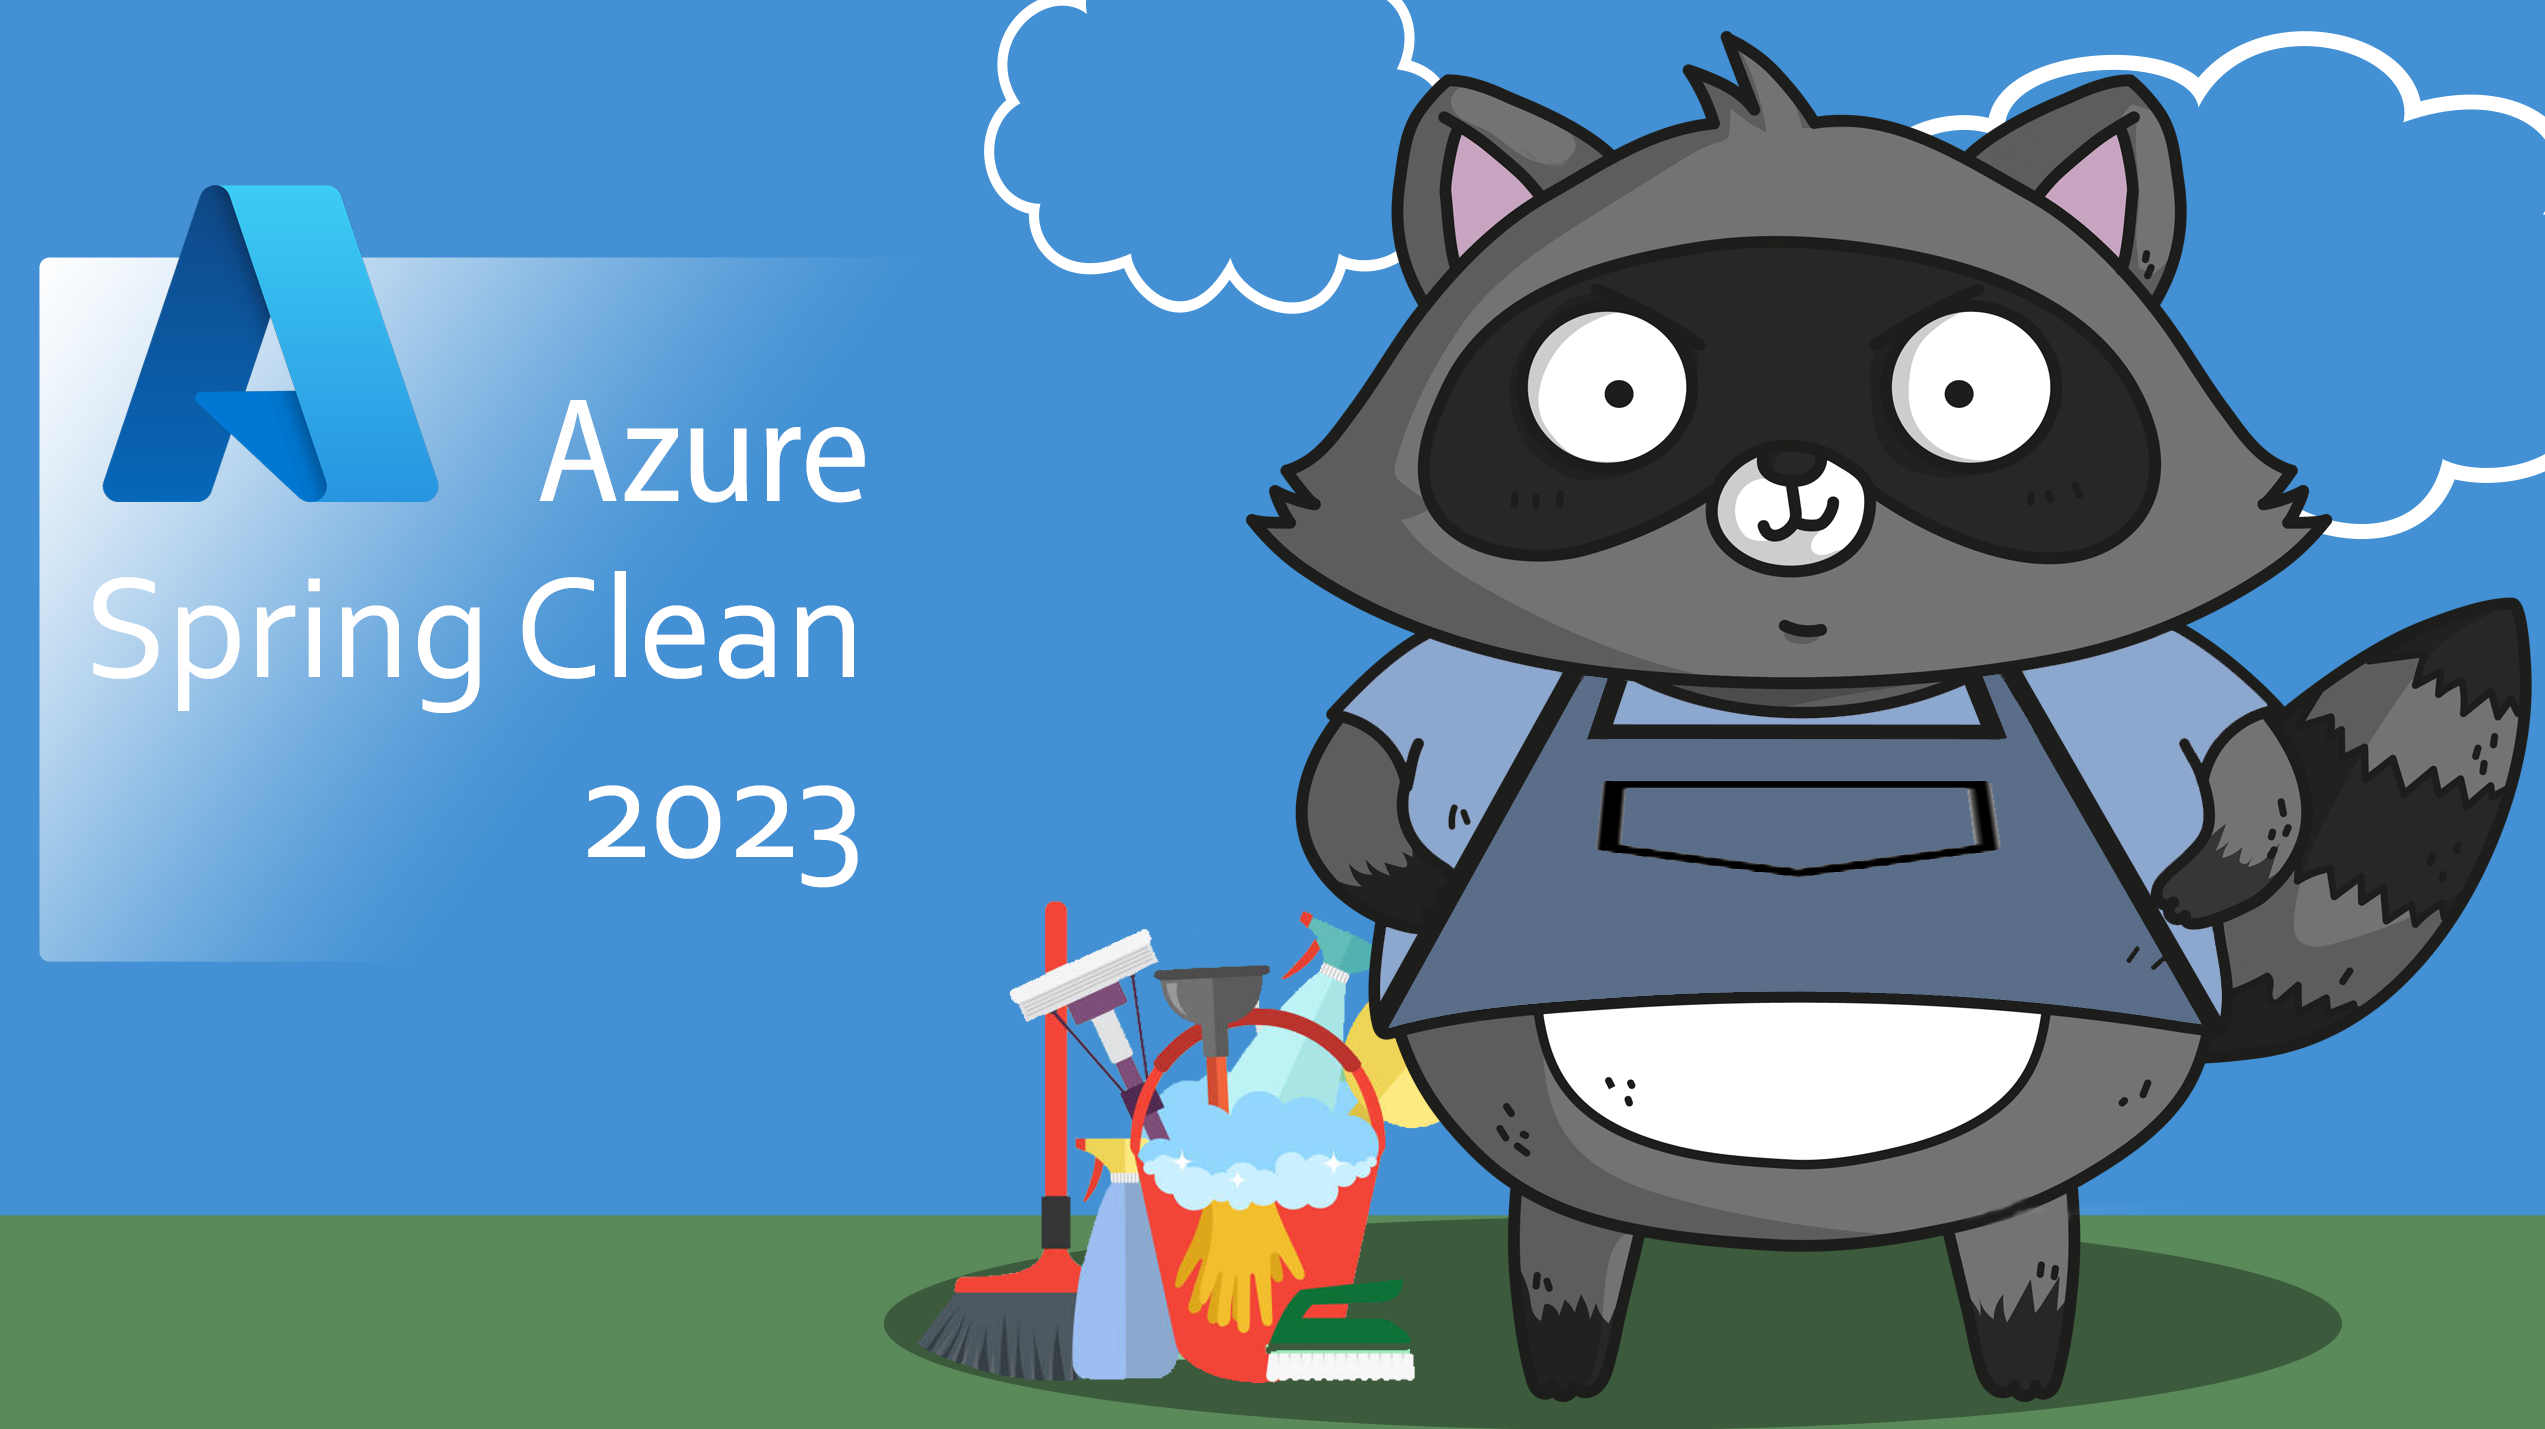 Azure Spring Clean 2023 logo.